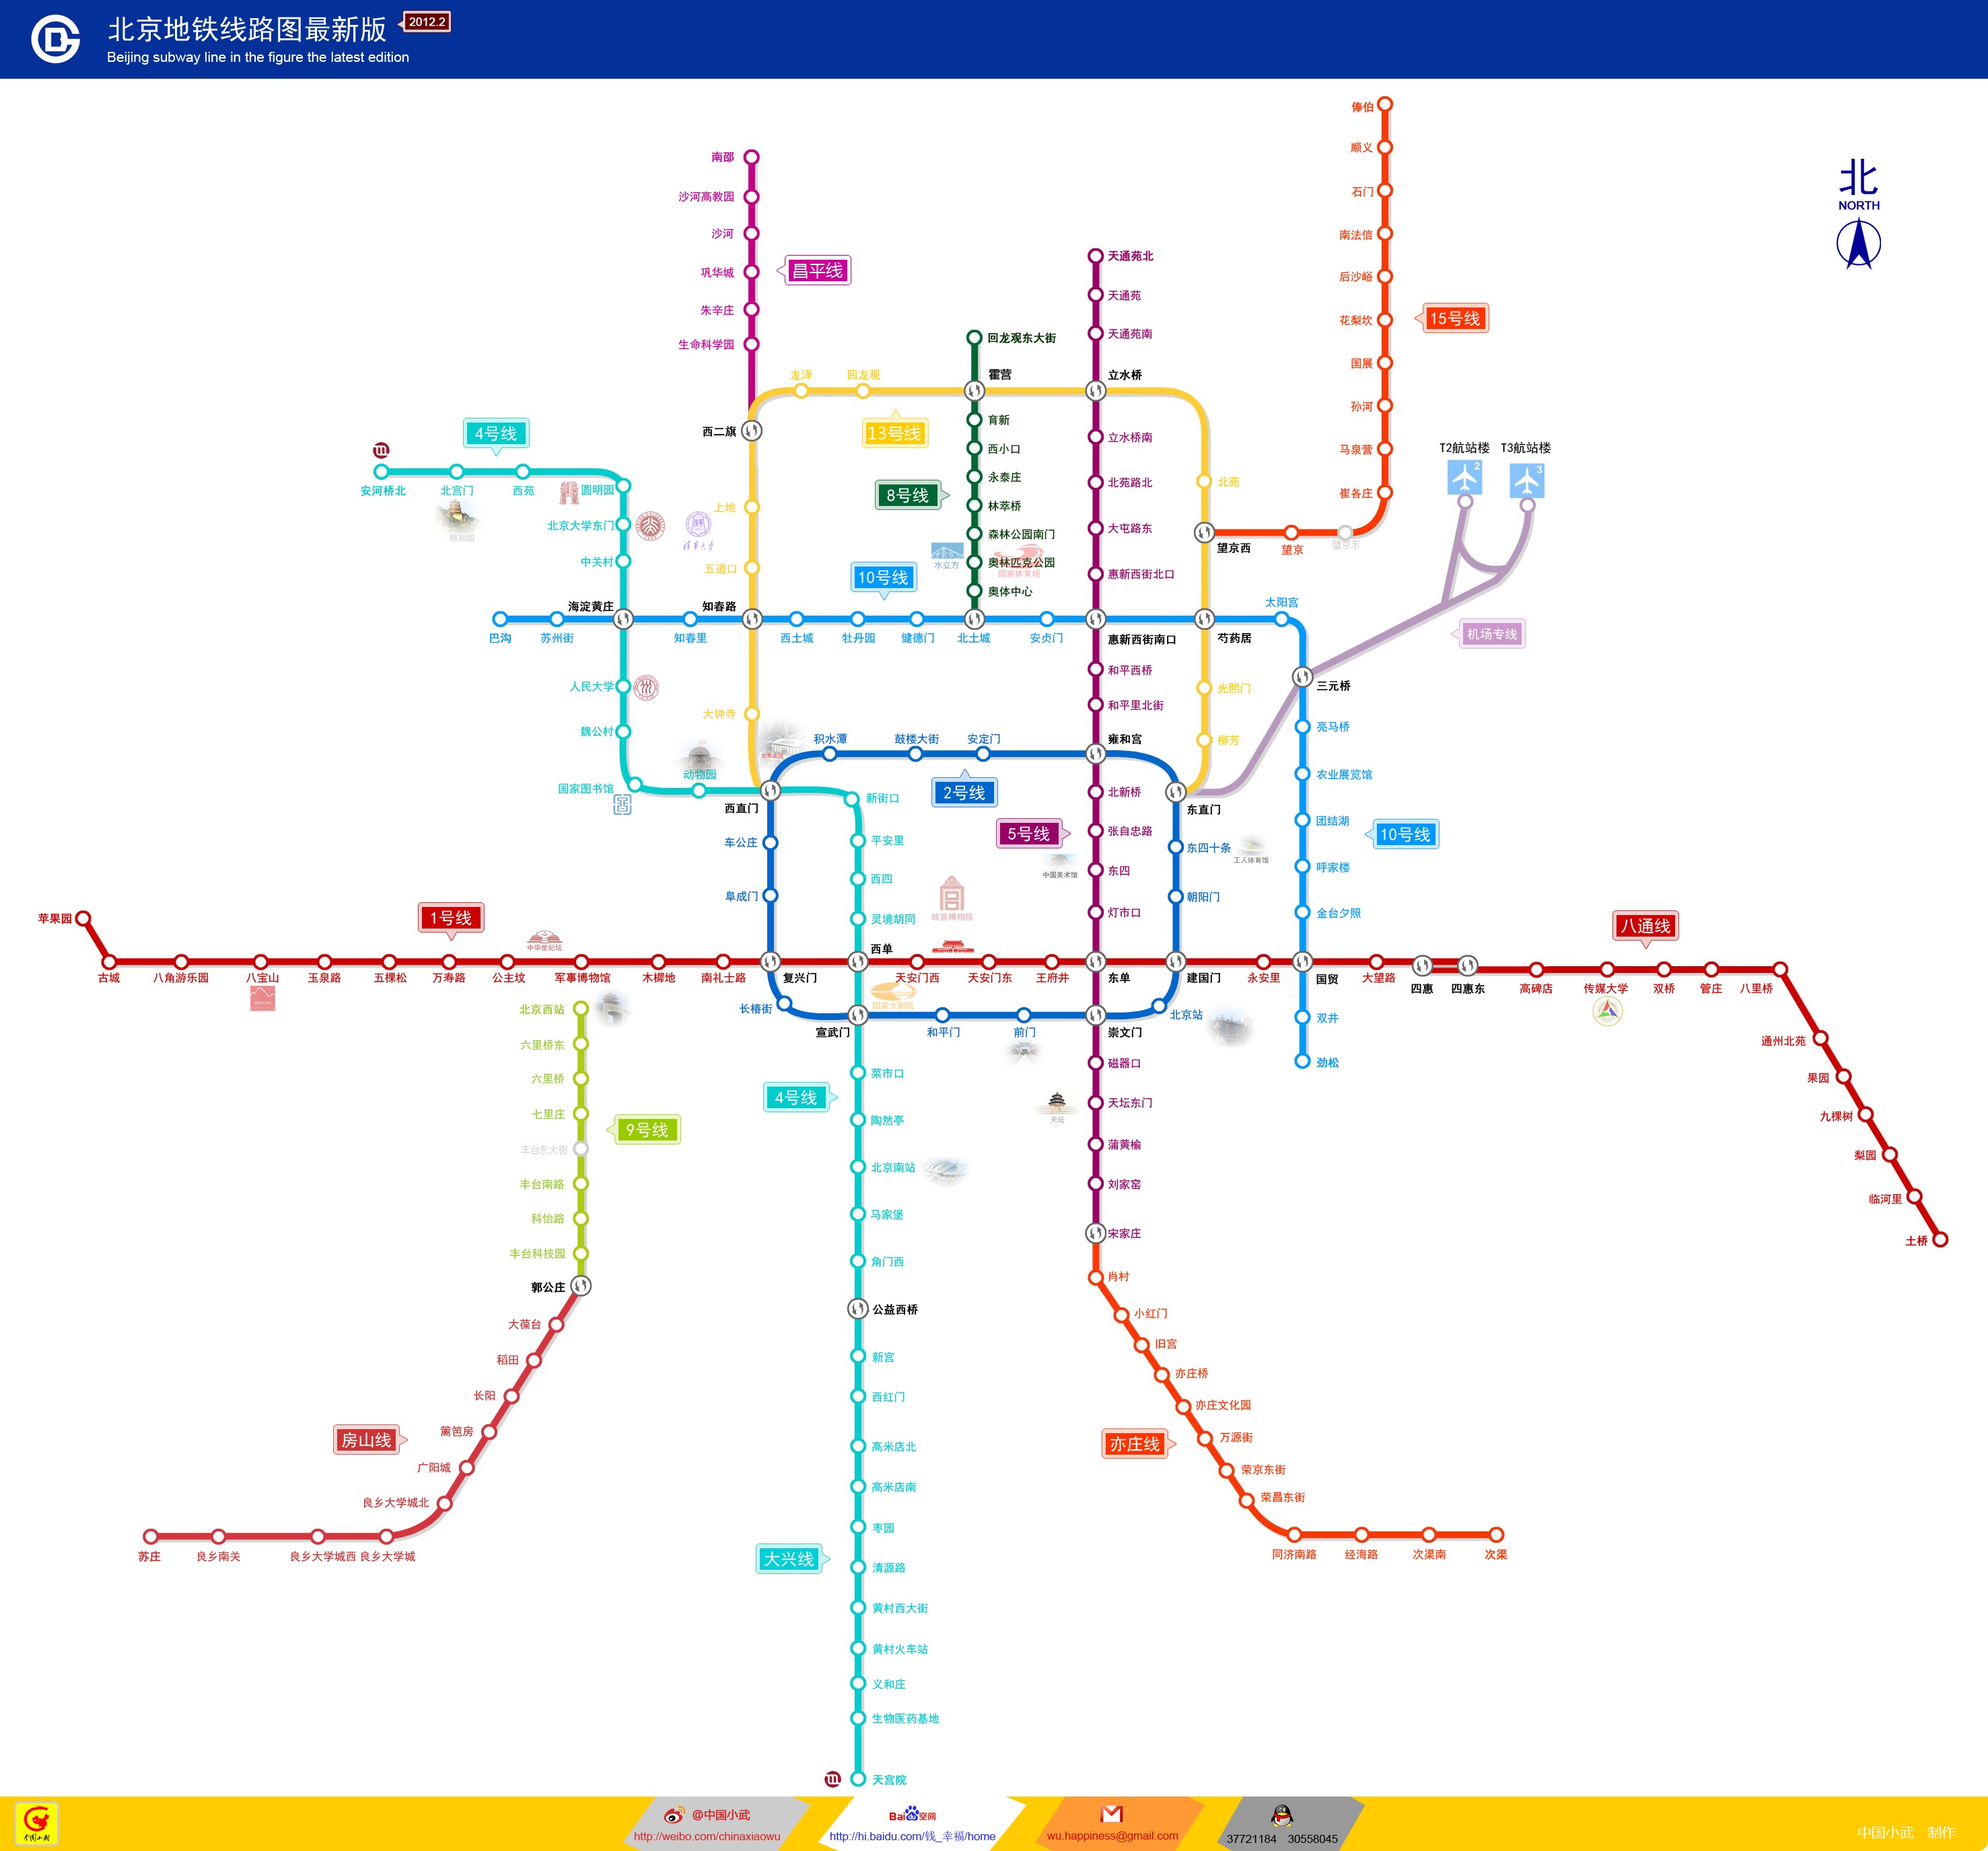 北京地铁线路图下载|北京地铁高清线路图下载2015 最新jpg格式线路图_ 绿色资源网